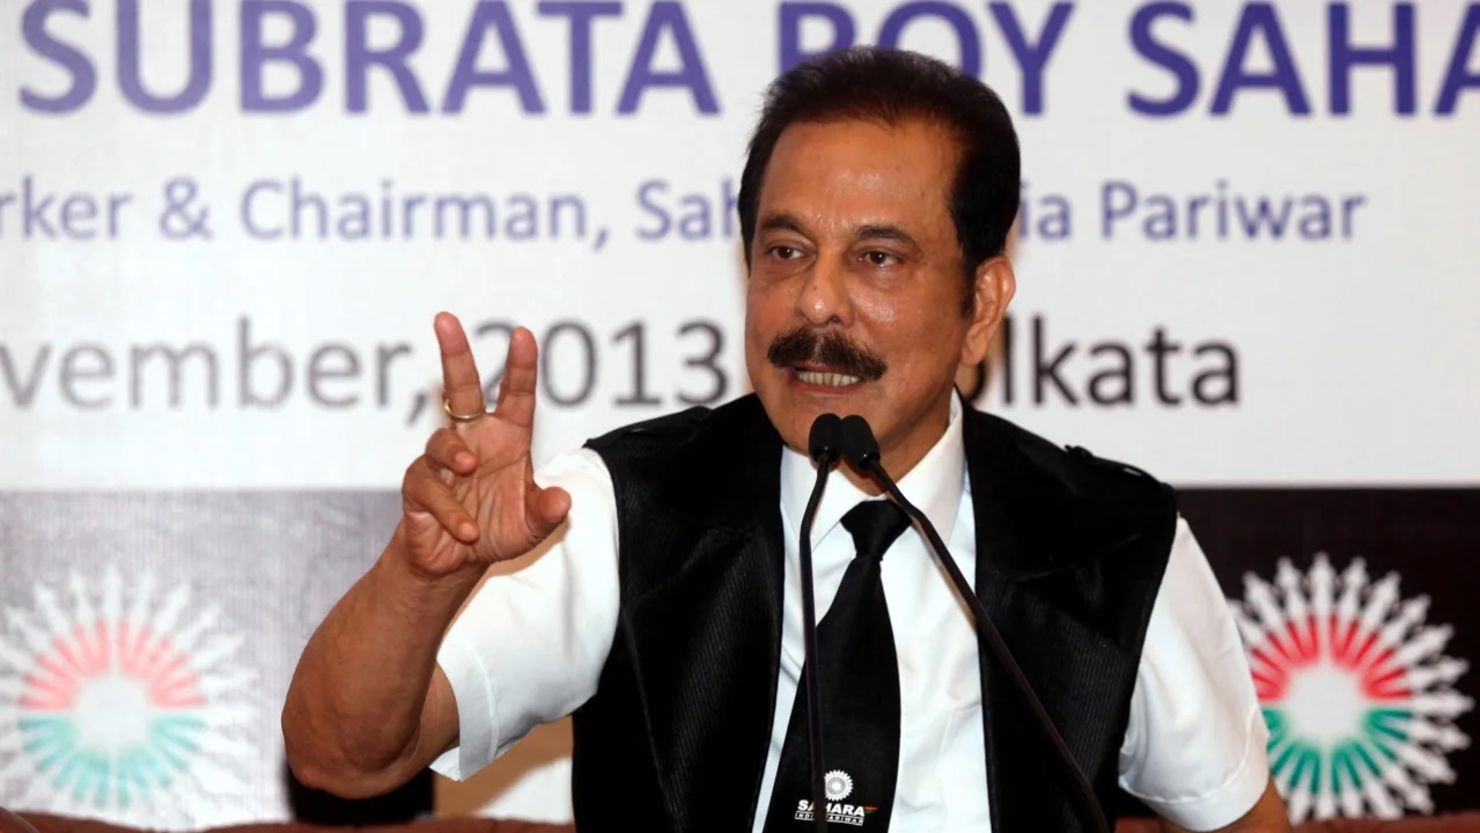 El presidente del Grupo Sahara, Subrata Roy, durante una conferencia de prensa en Calcuta el 29 de noviembre de 2013.